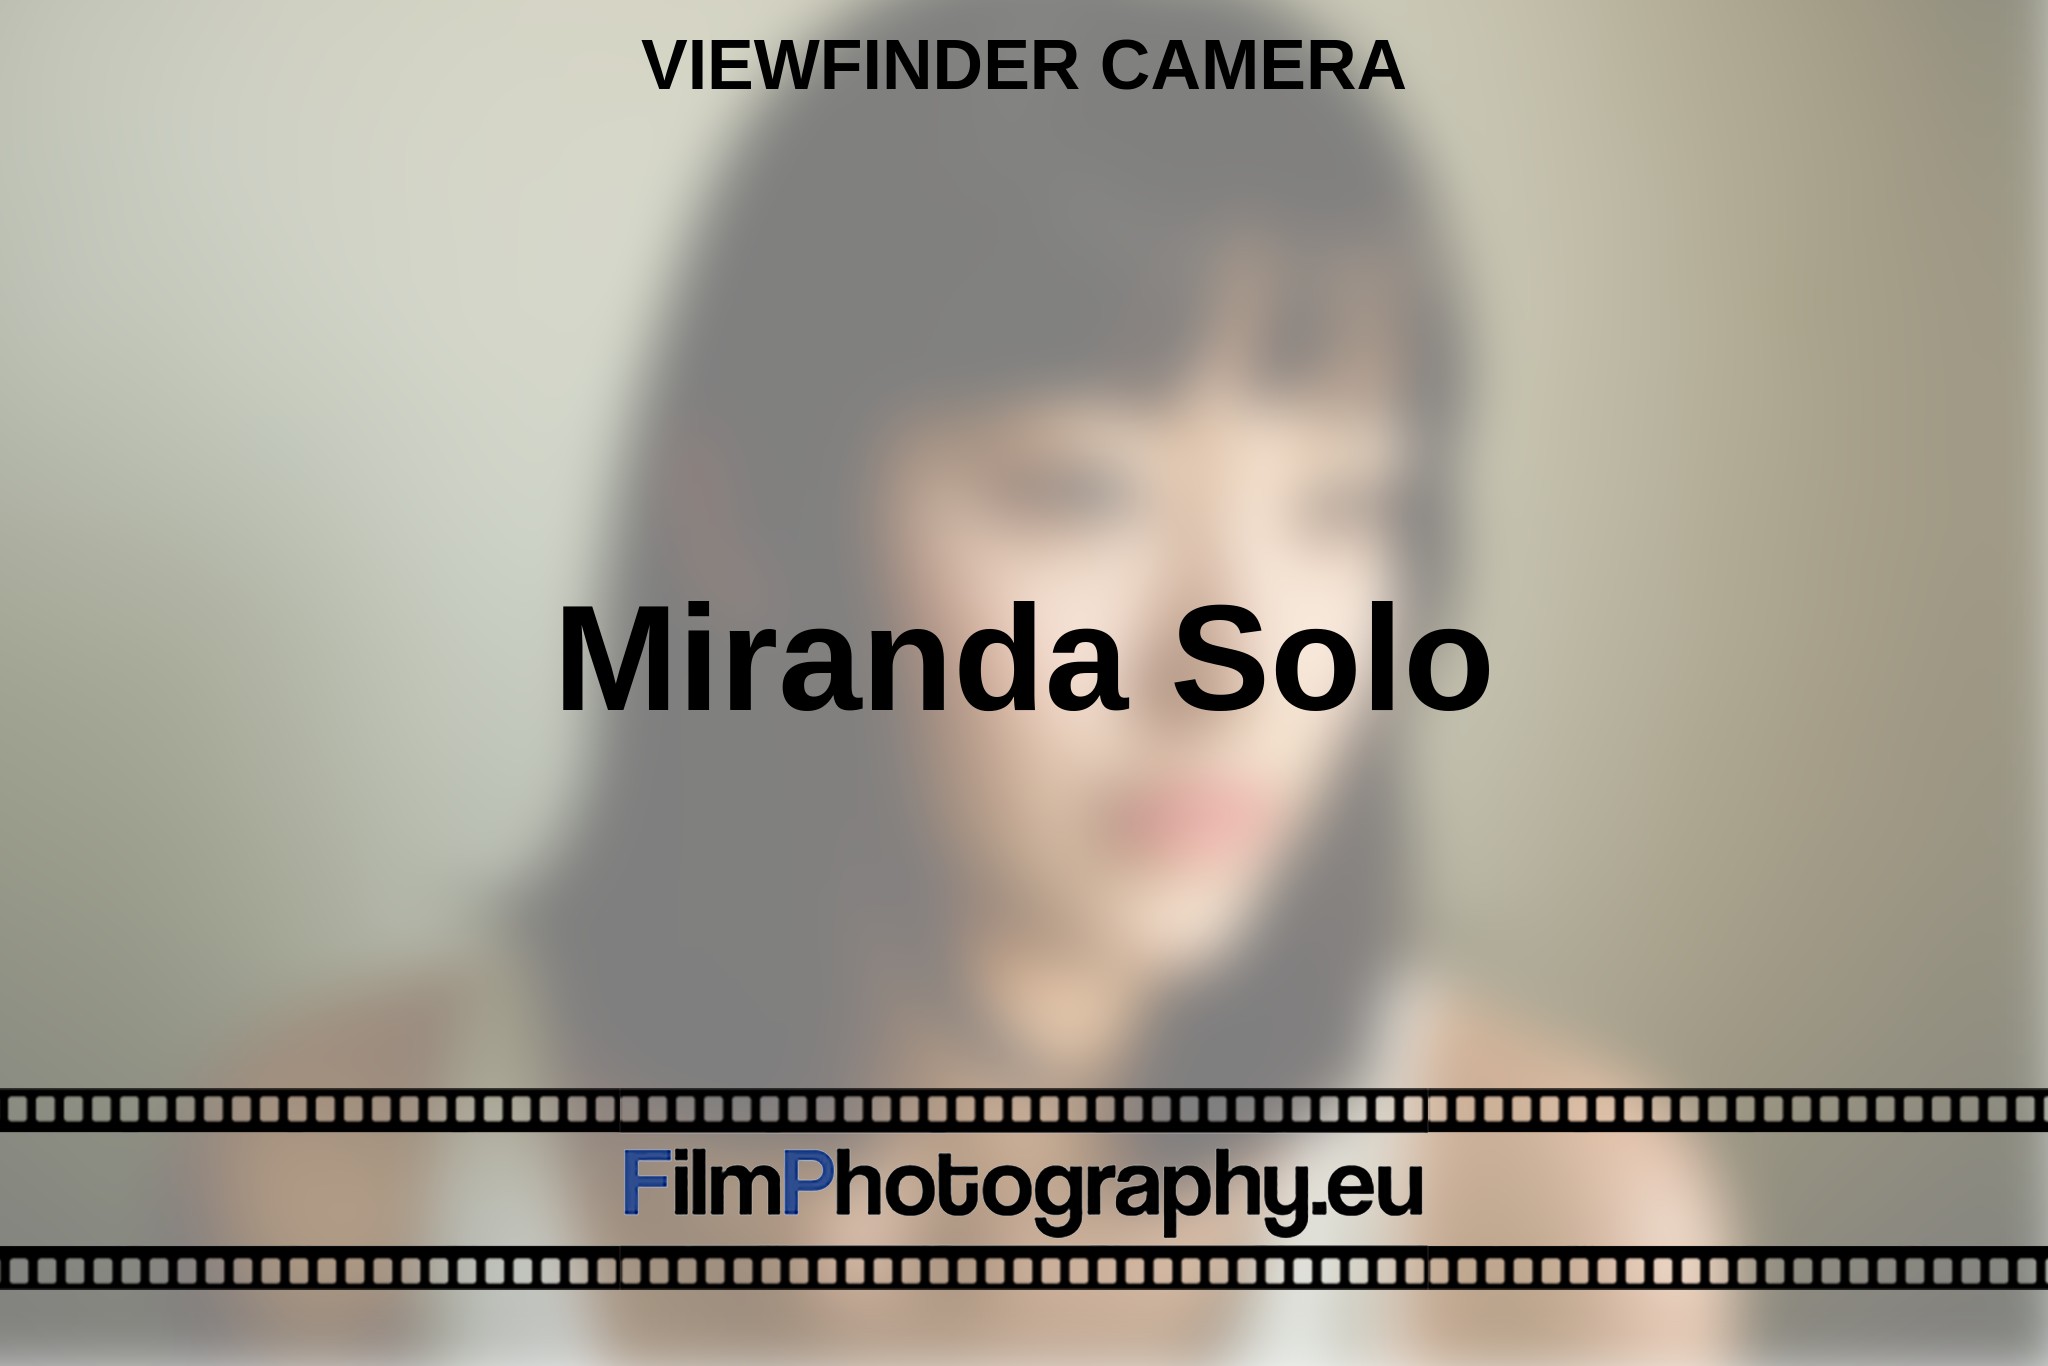 miranda-solo-viewfinder-camera-en-bnv.jpg